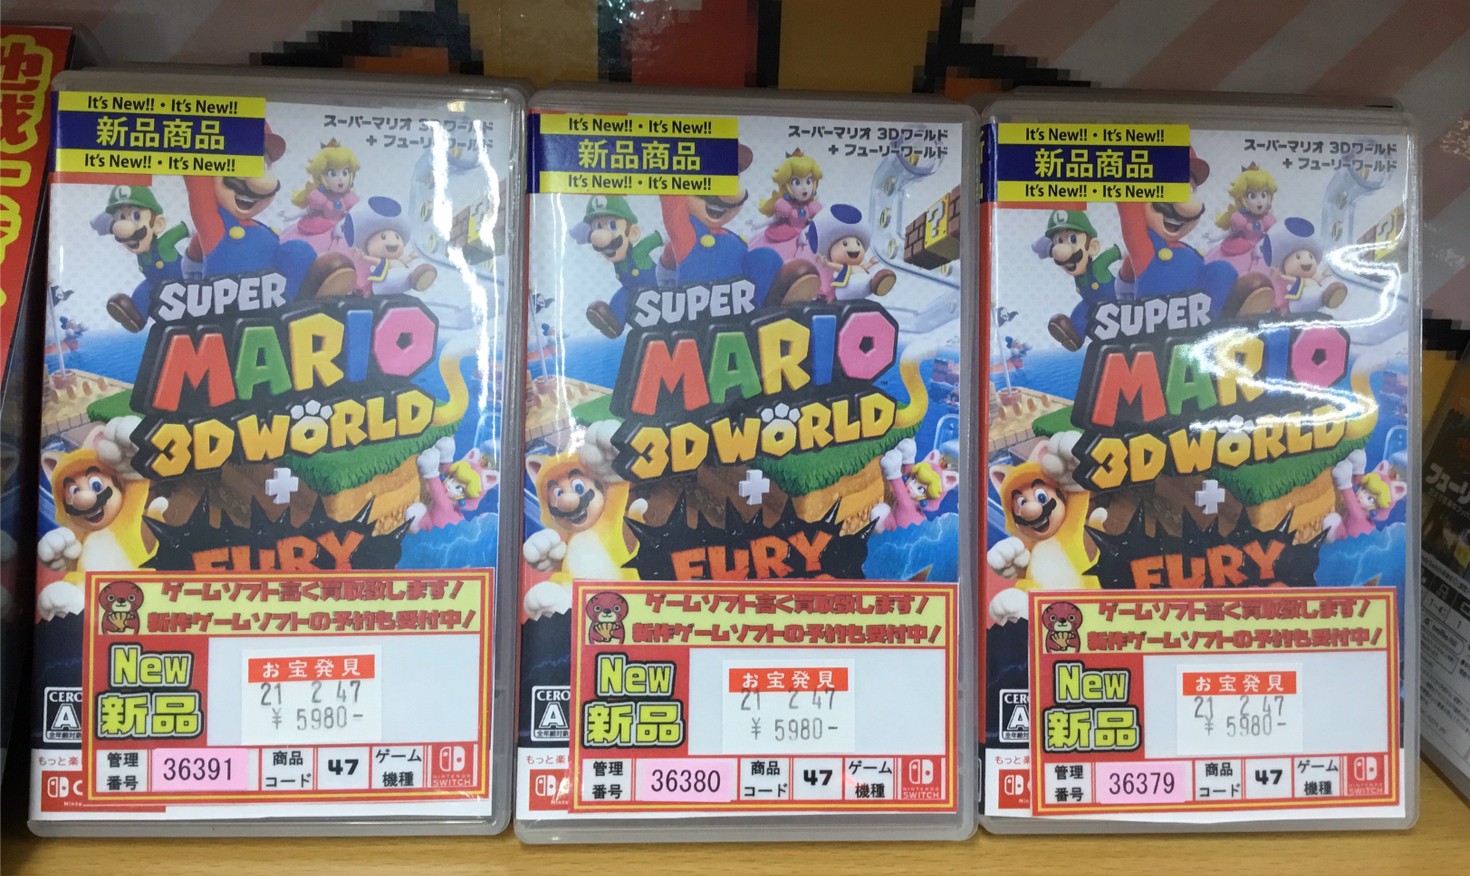 2 12 ゲーム Switch スーパーマリオ3dワールド フューリーワールド Amiibo スーパーマリオシリーズ Switch マリオレッド ブルーセット 入荷しました 売るのも買うのもマンガ倉庫山口店